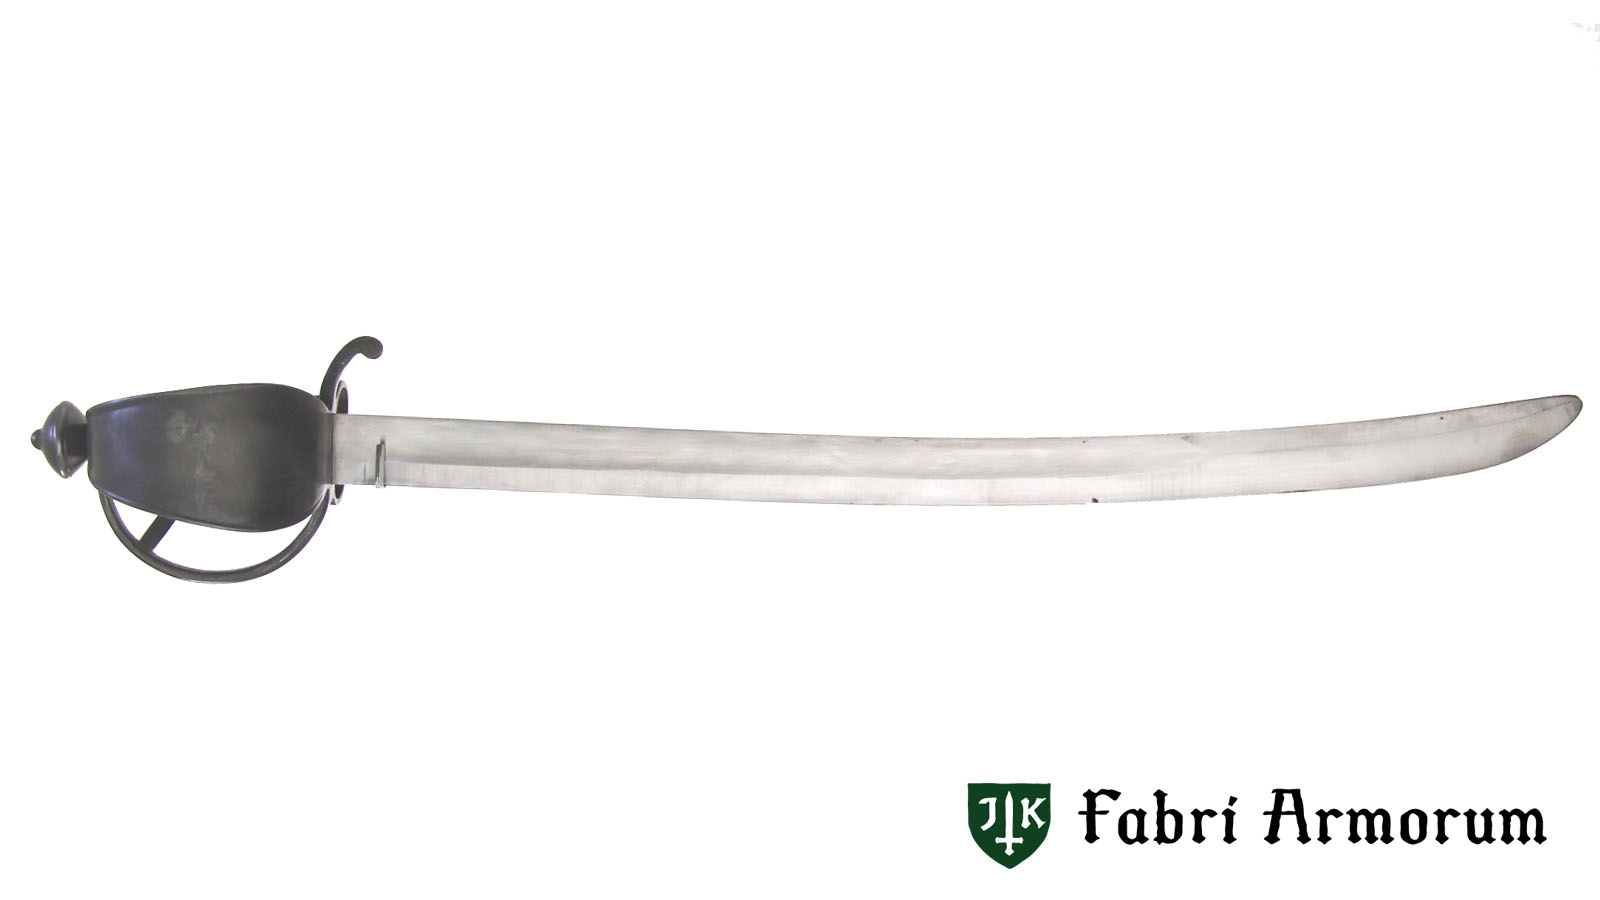 Swiss sabre, Battle Blade Version